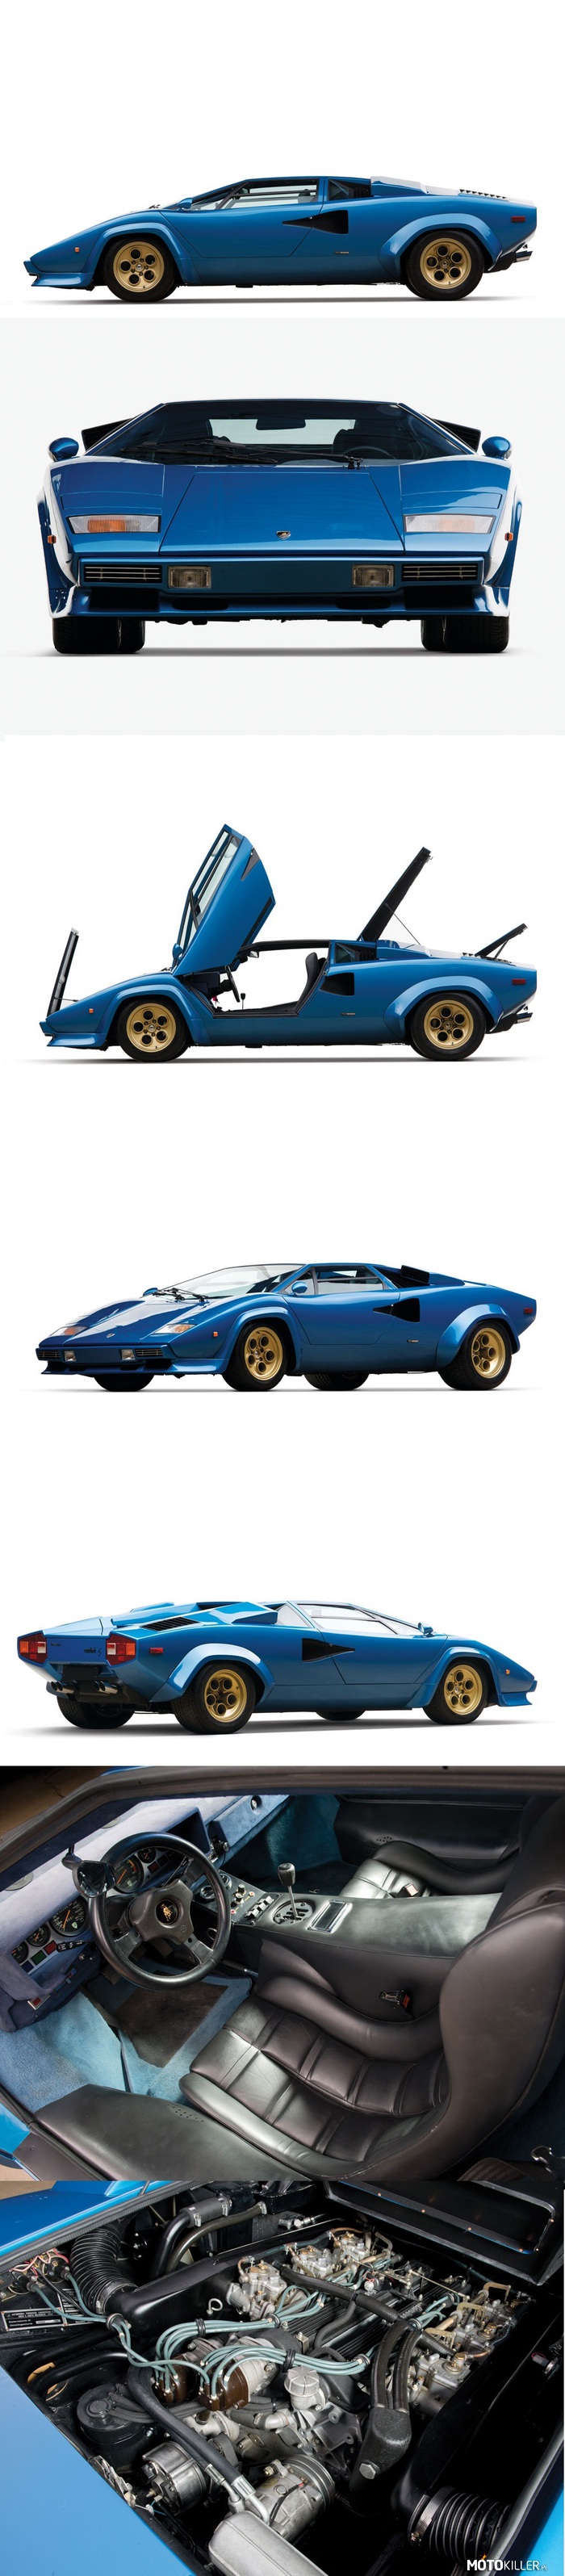 Lamborghini Countach LP 400S &#039;79 – Lamborghini Countach LP 400S powstało w 237 egzemplarzach, które specjaliści dzielą na trzy serie. To licytowane pochodzi z pierwszej z trzech, obejmującej 50 sztuk i wyróżniającej się felgami Campagnolo Bravo w kształcie tarczy telefonu.  Samochód w dużej części zachował oryginalną stylizację Bertone, która w latach 70-tych szokowała swoją futurystyczną formą. W porównaniu z LP400 poszerzono jedynie rozstaw kół (dodane nakładki na błotnikach) i opony, by zapewnić lepszą przyczepność. 